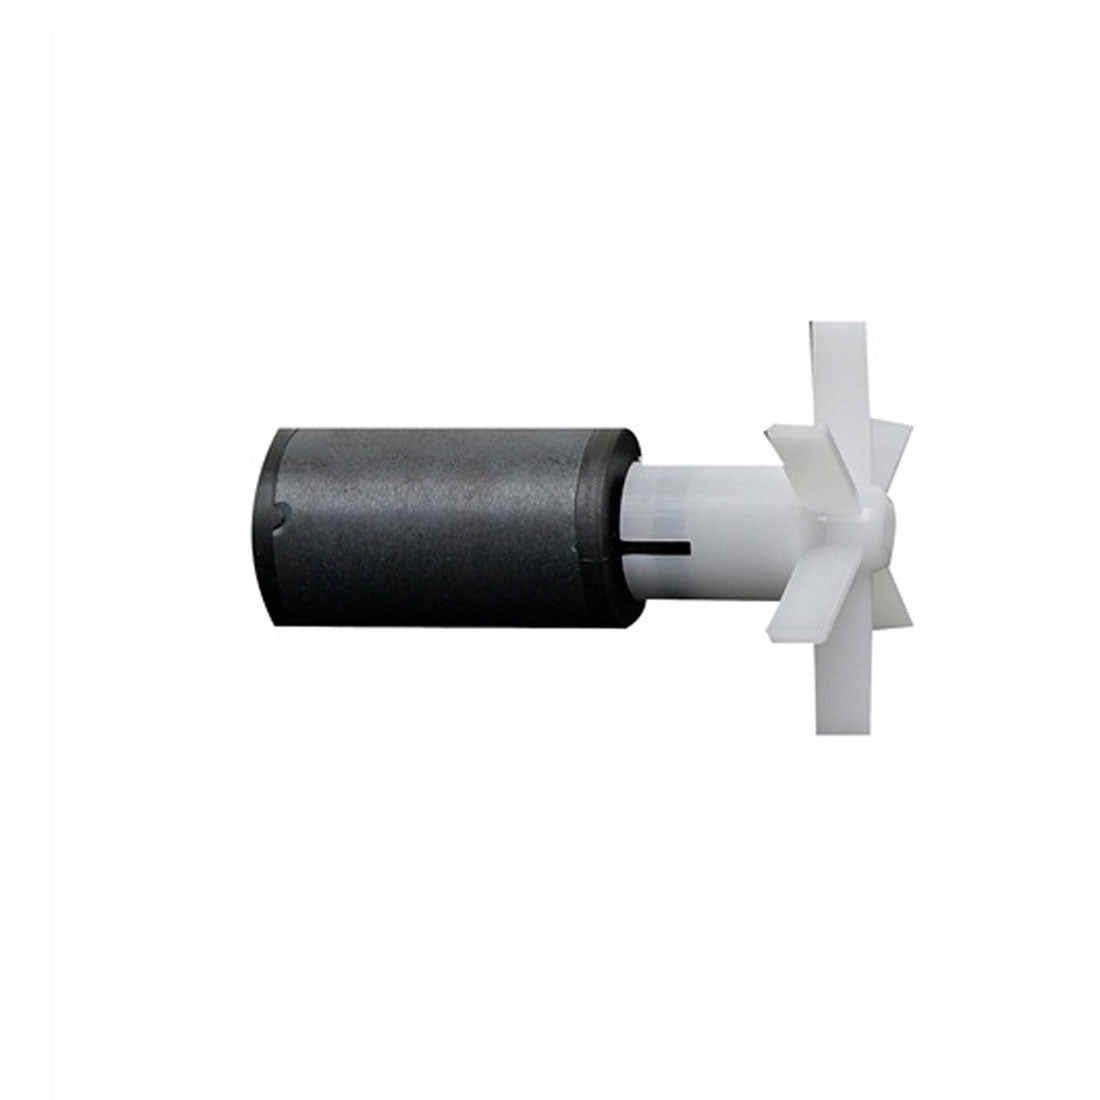 Fluval 405 External Filter Magnetic Impeller